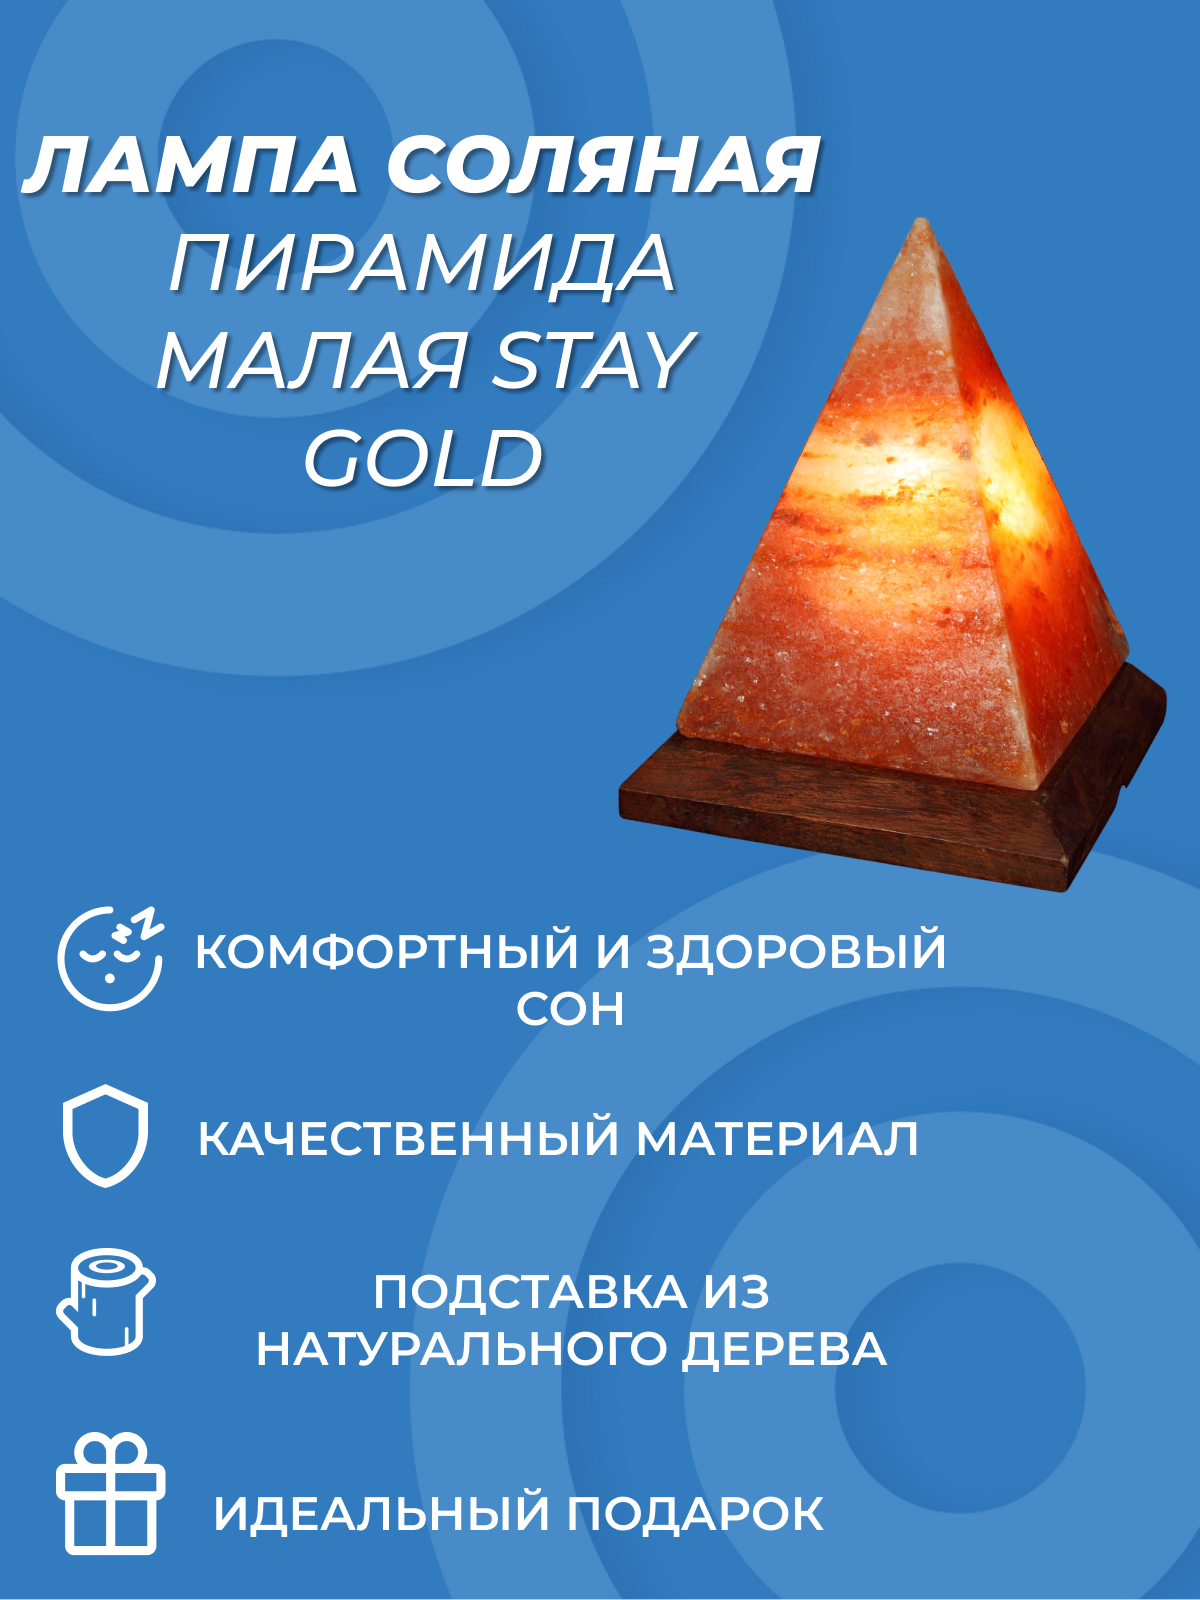 Соляная лампа STAY GOLD Пирамида малая Hoff - фото №3